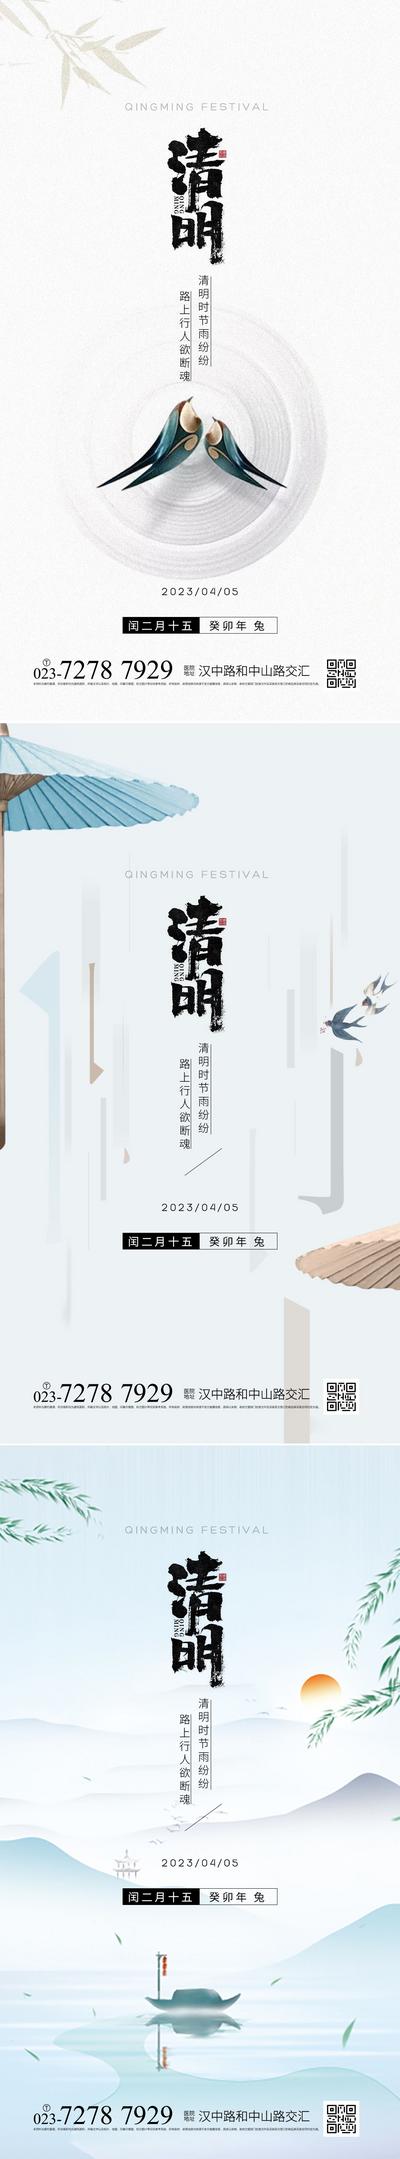 南门网 广告 海报 节日 清明 简约 品质 追思 雨伞